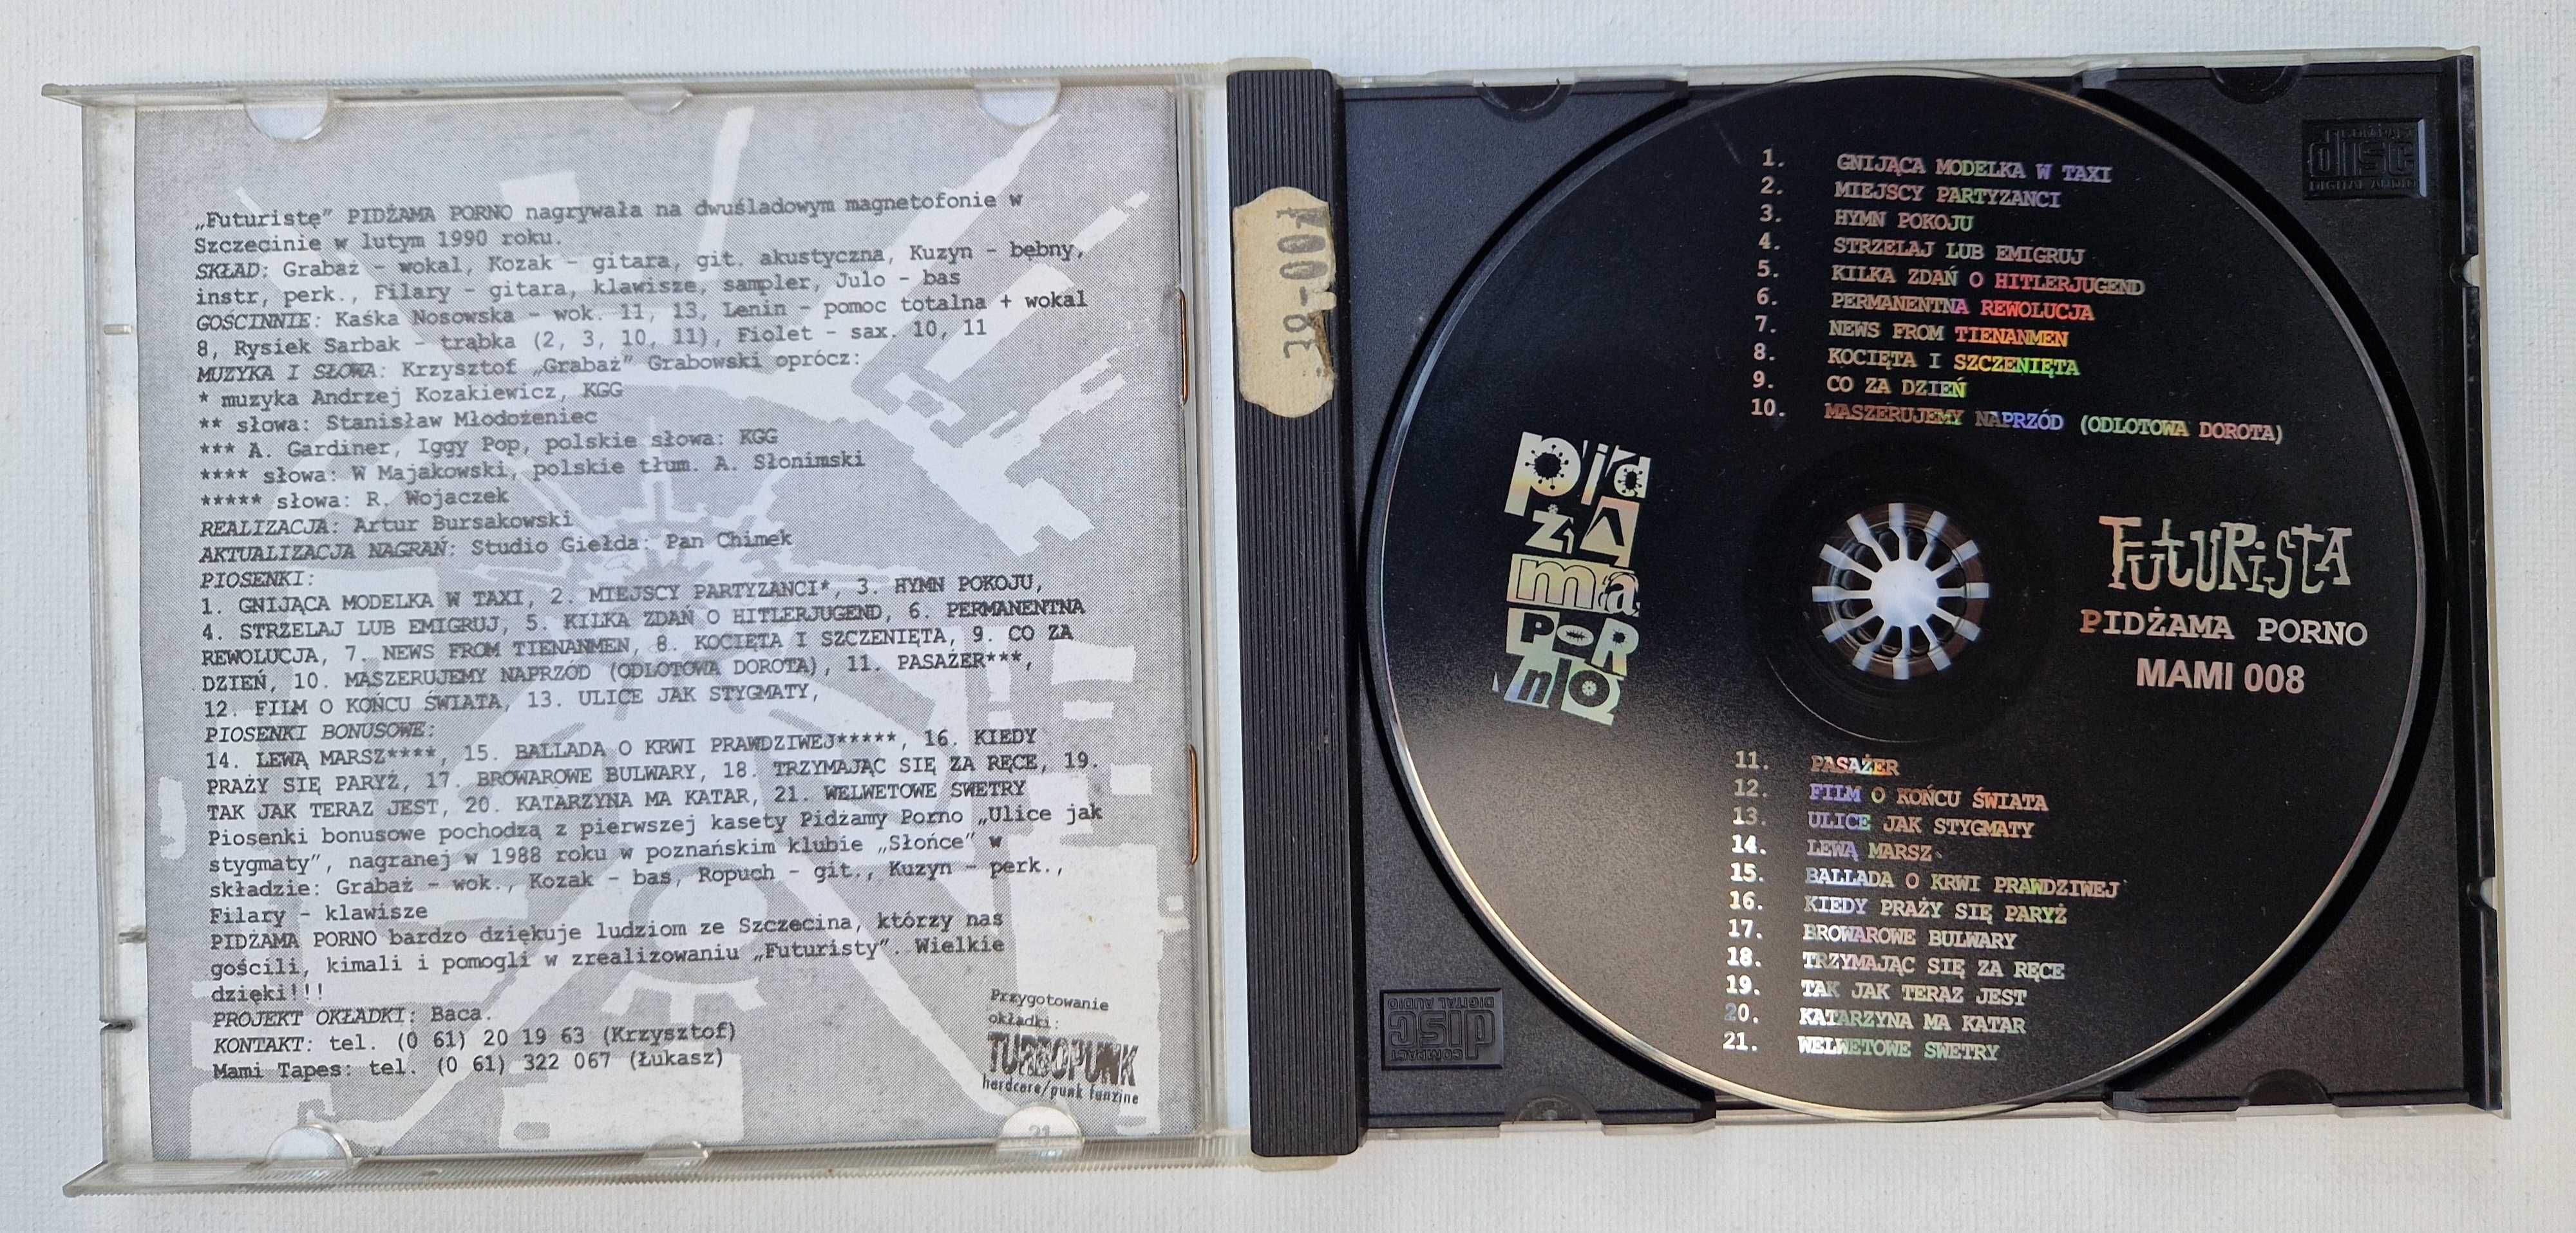 Płyta CD Pidżama Porno Futurista - wydanie I 1996